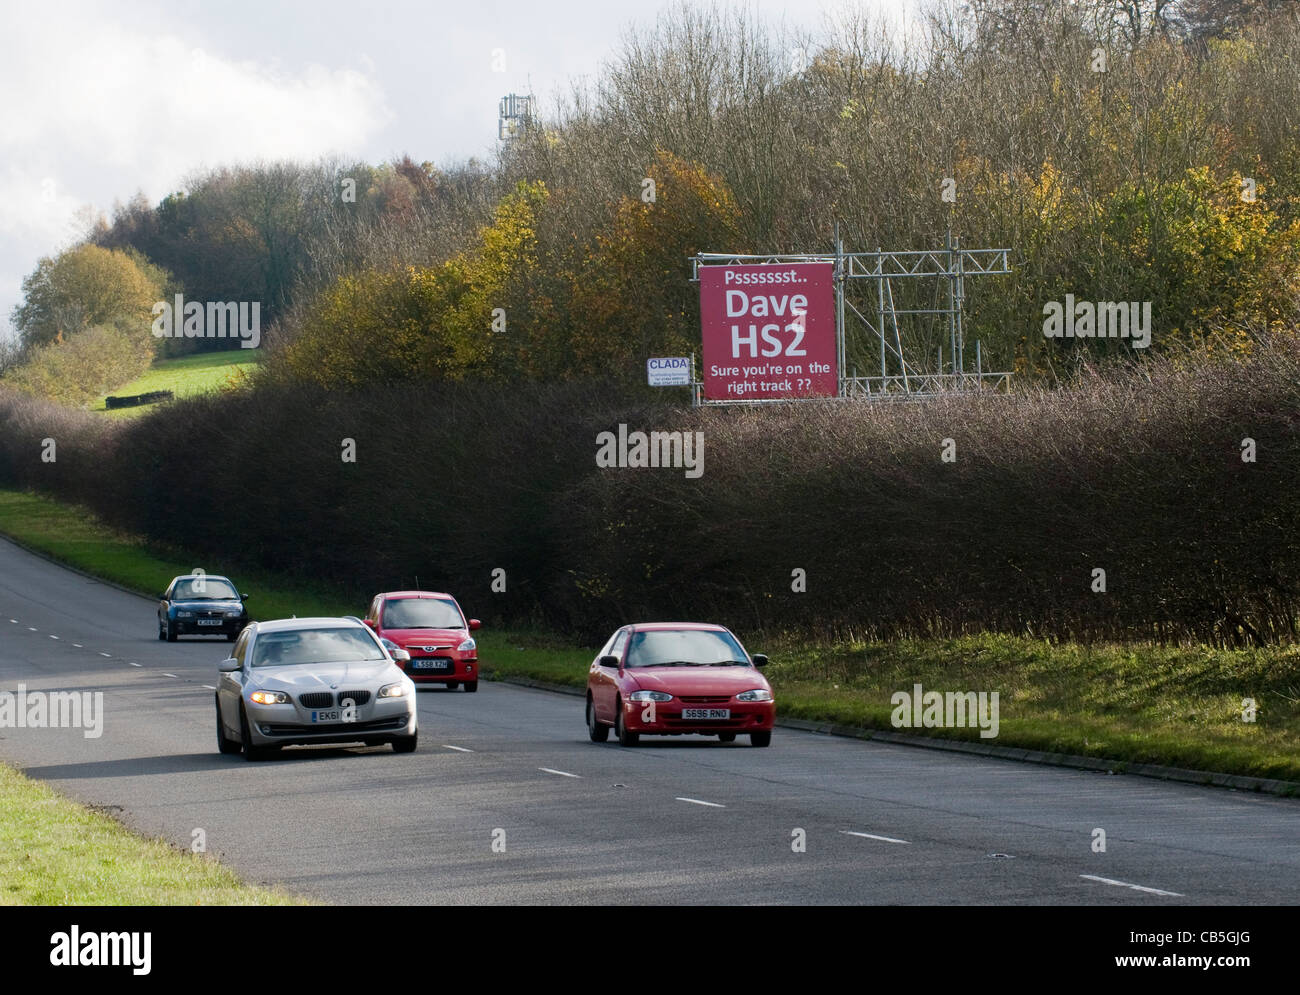 Schild an der A413 in der Nähe von Amersham, drängen "Dave" der Premierminister, der HS2 Schiene Vorschlag Pläne zu überdenken. Stockfoto